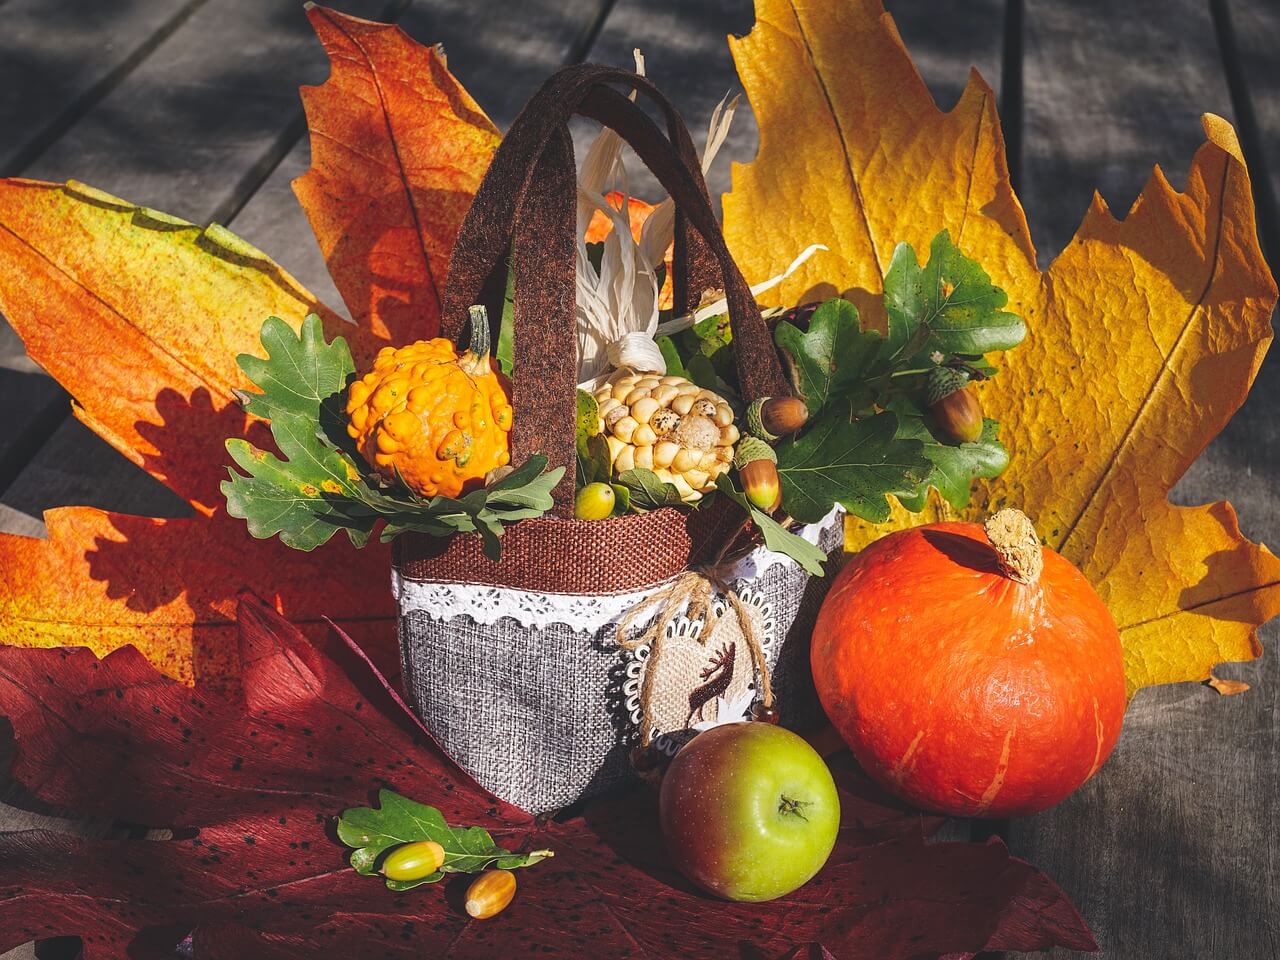 Spoznajte 5 tipov jesennej výzdoby, ktorá vás očarí